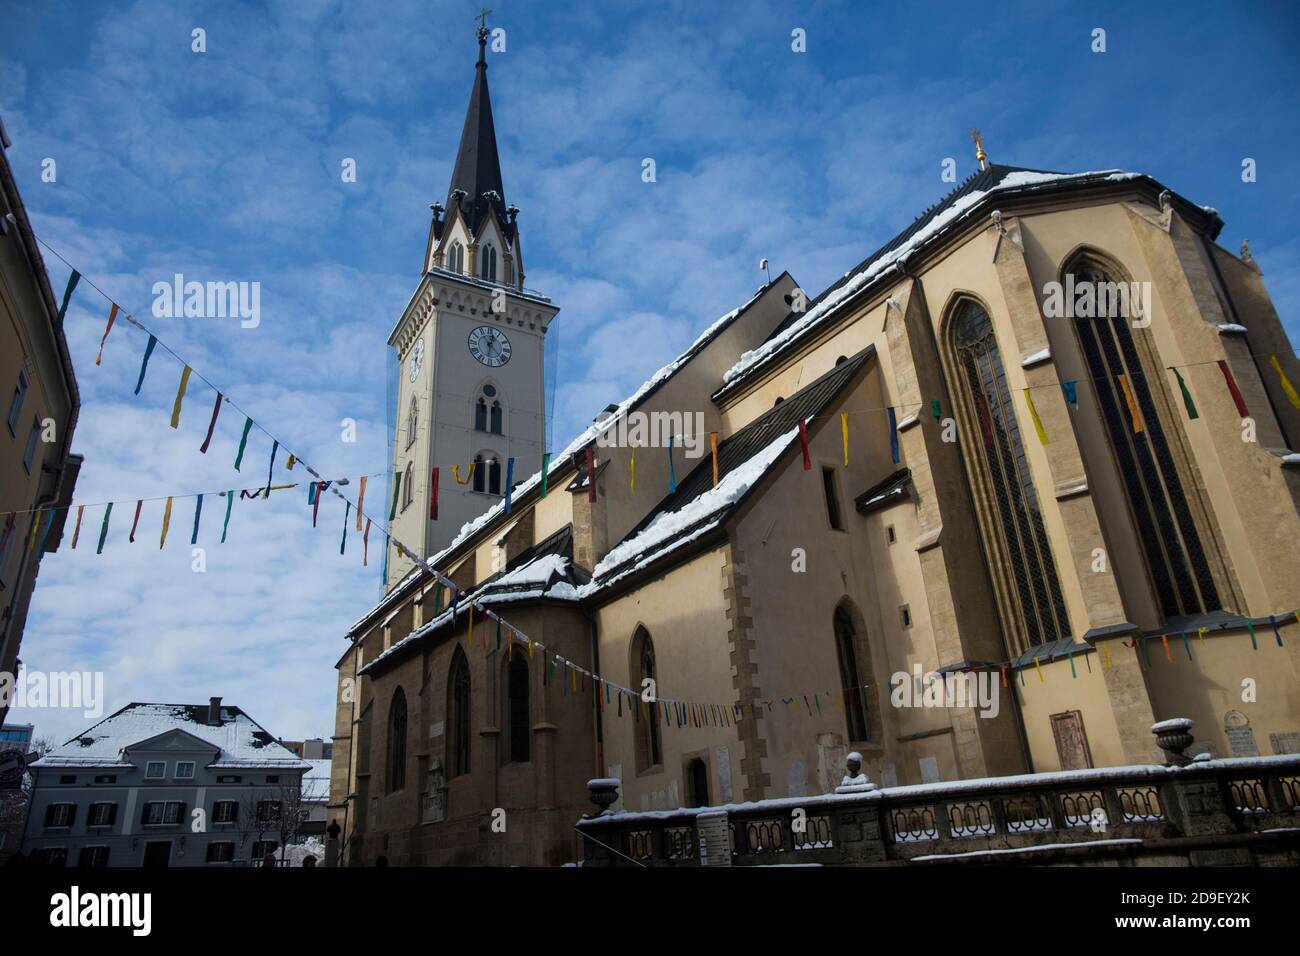 Saint Jacob's Parish Church, Villach, Carinthia, Austria Stock Photo